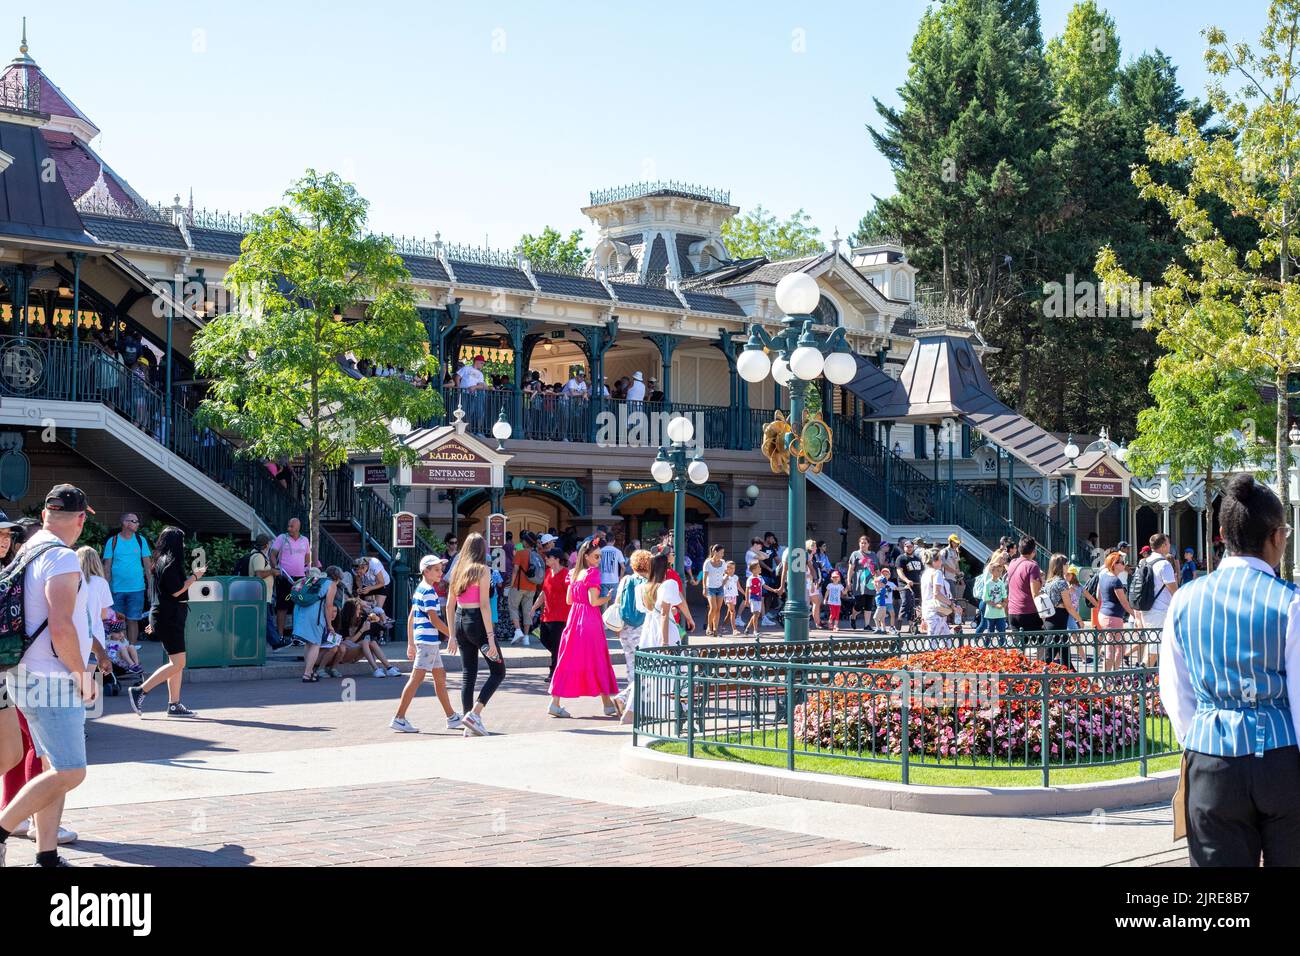 La gare principale de Disneyland Paris et les gens Banque D'Images